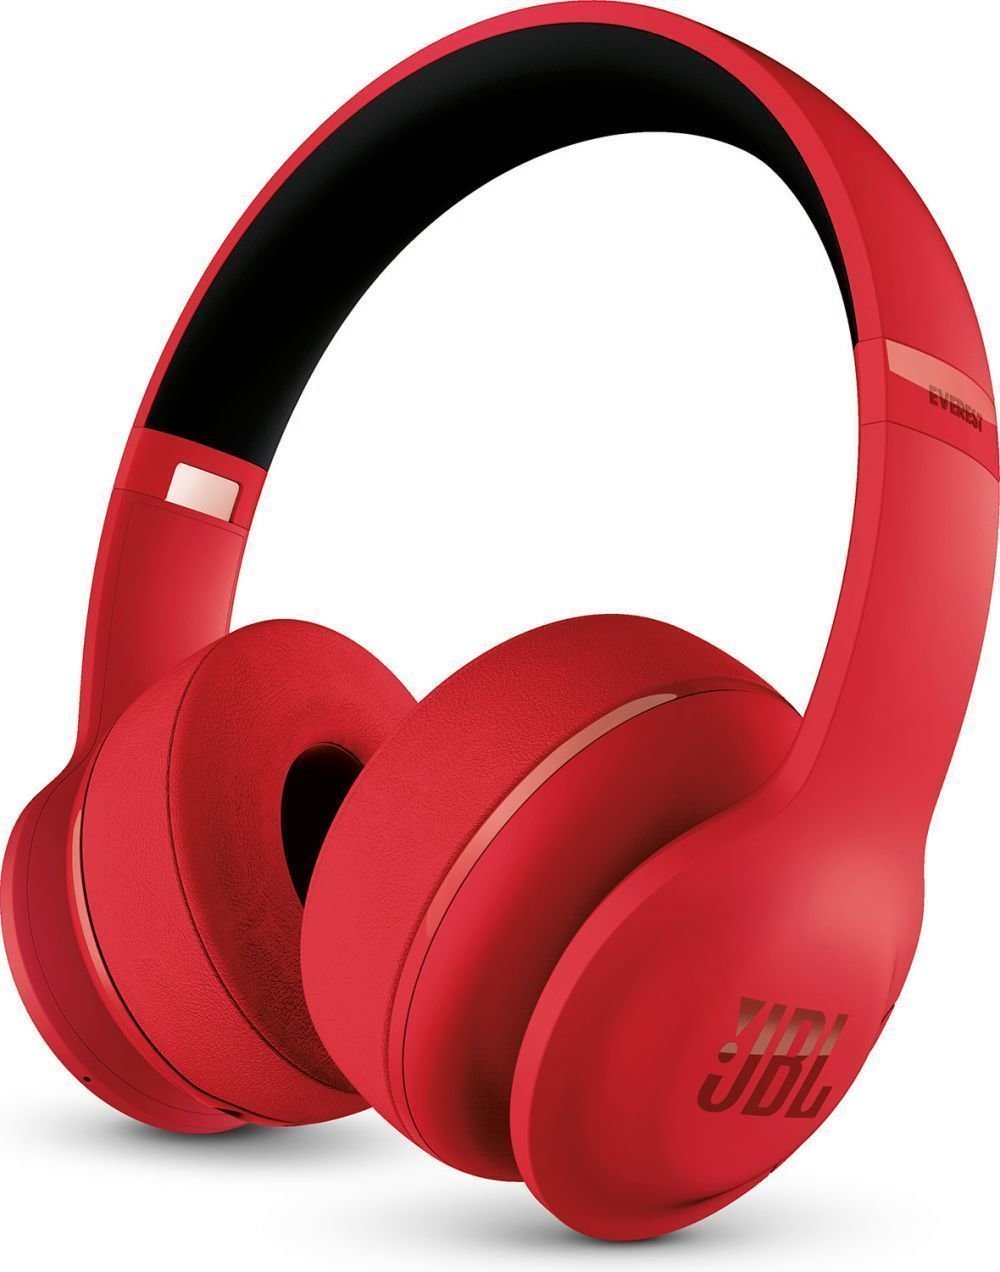 Wireless On-ear headphones JBL Everest 300 Red